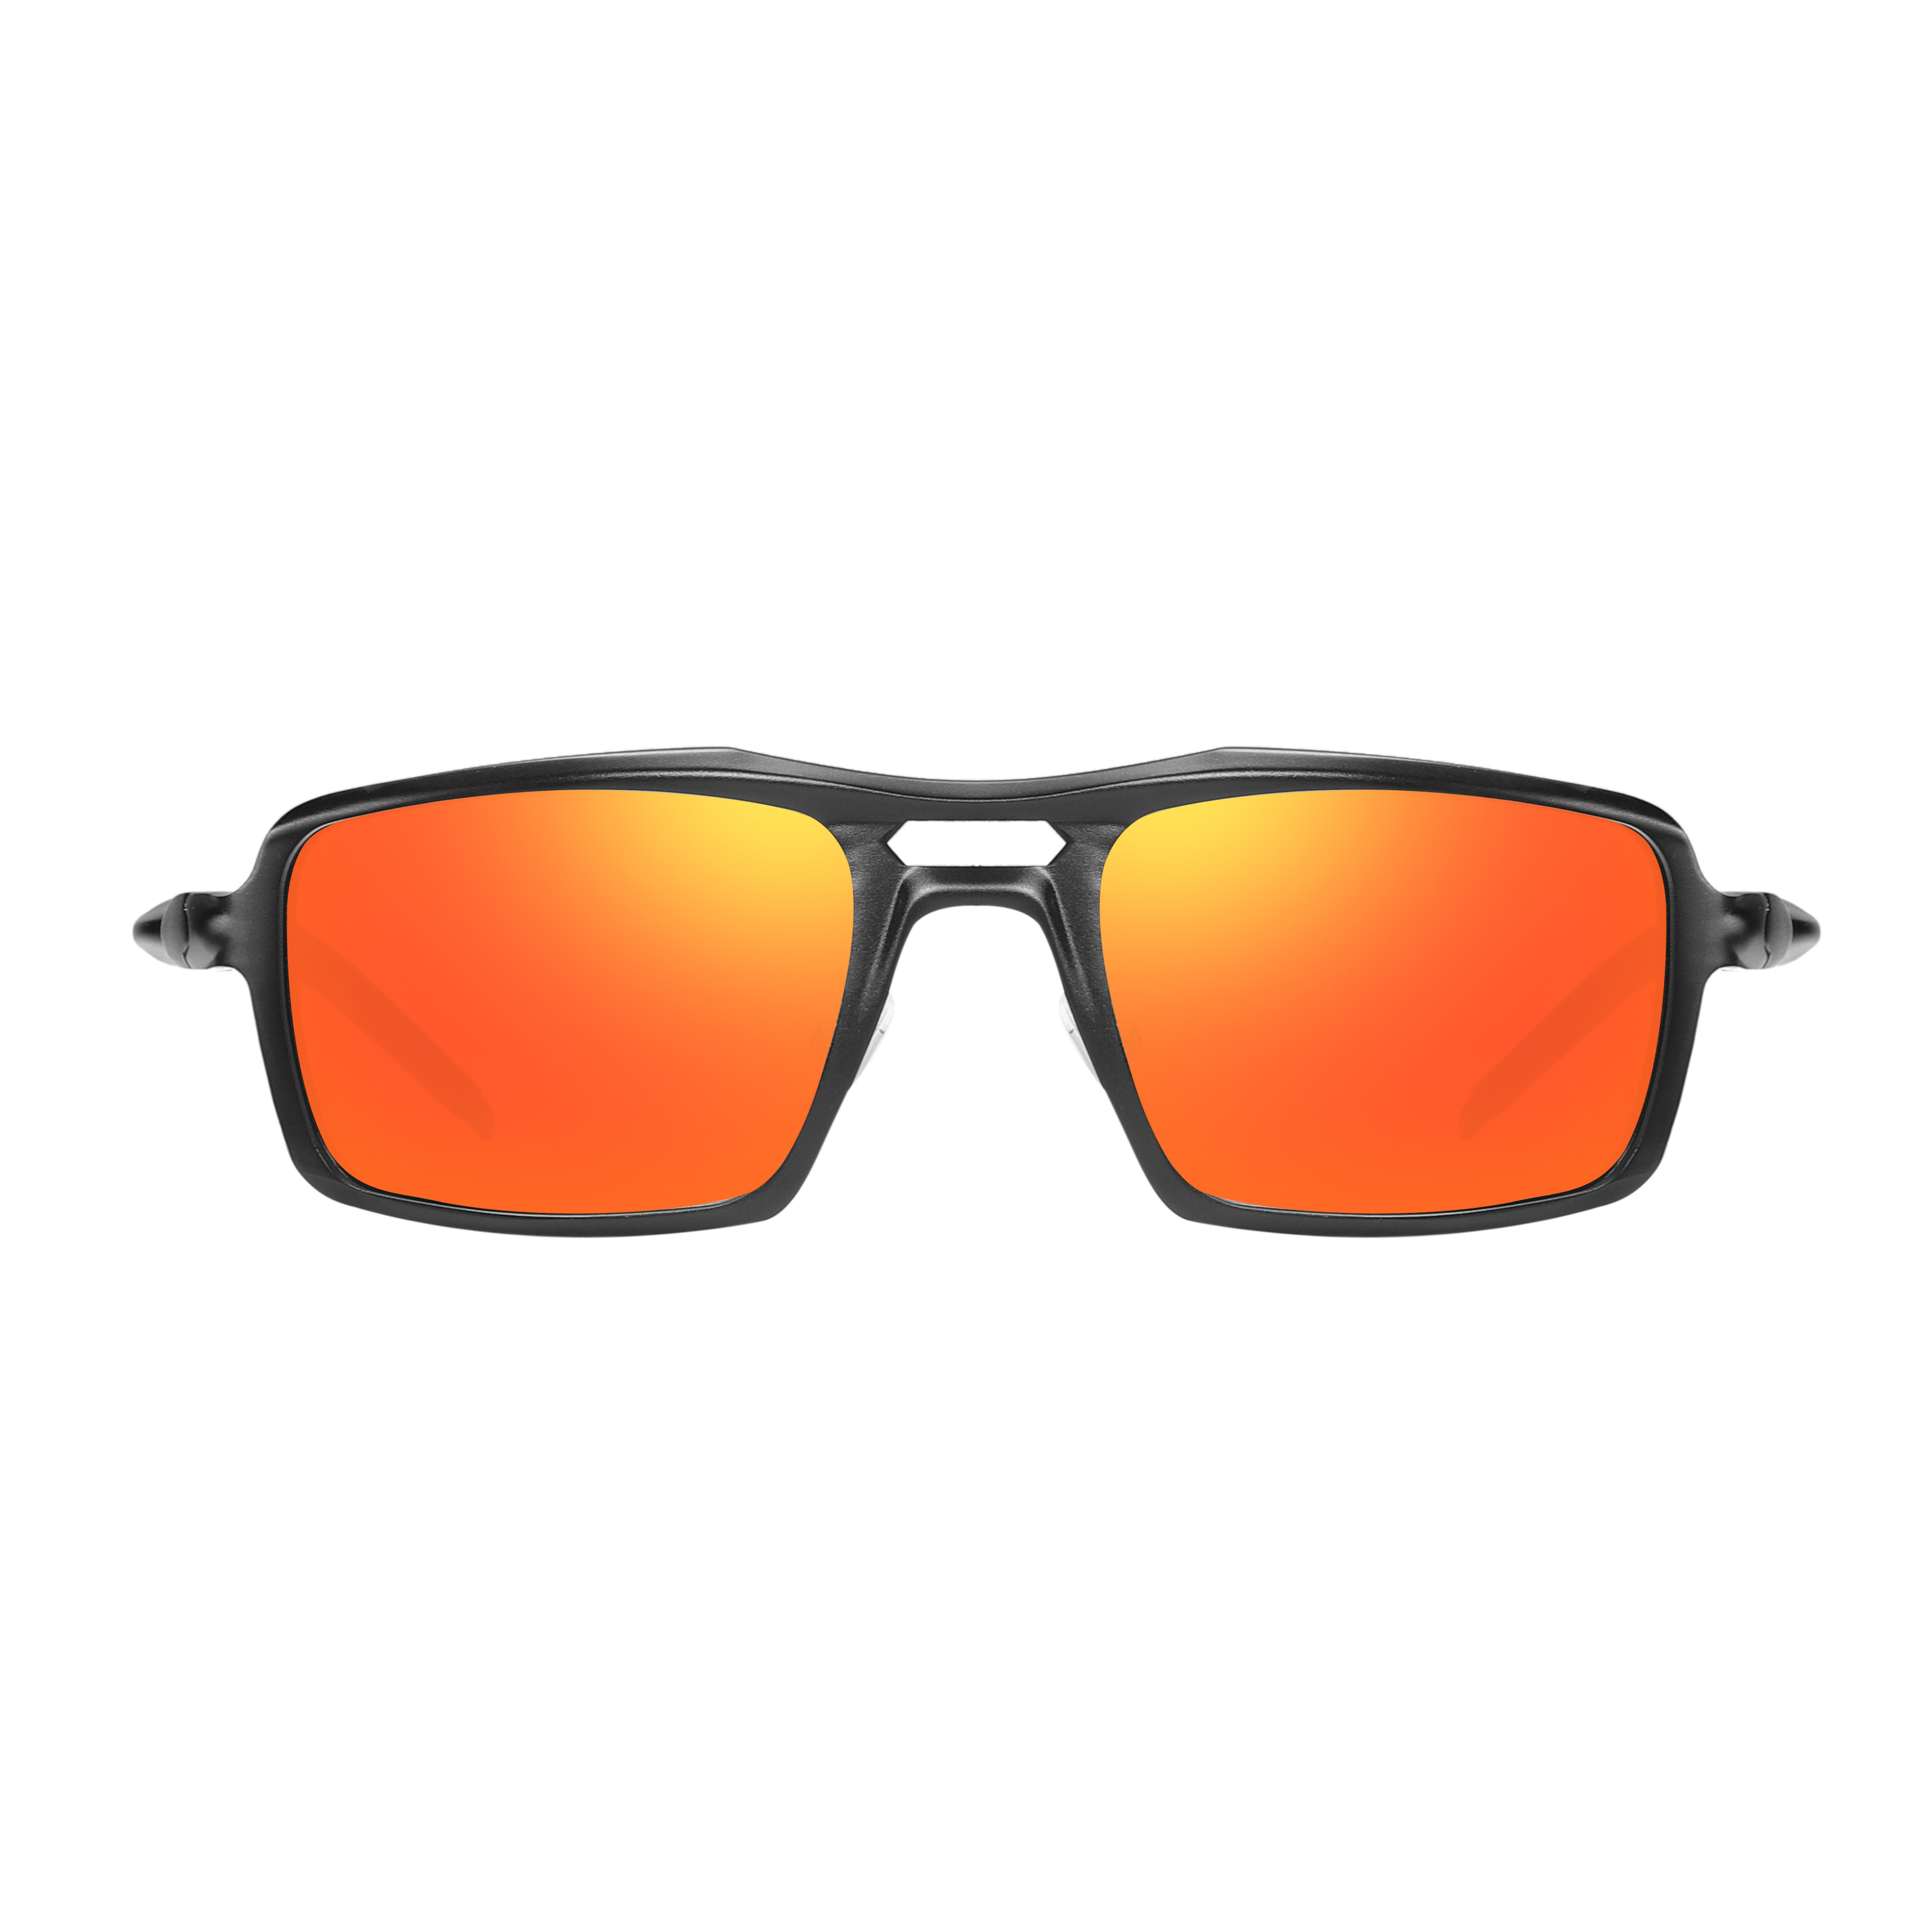 EUGENIA популярные популярные мужские солнцезащитные очки из алюминиевого материала для рыбалки и вождения